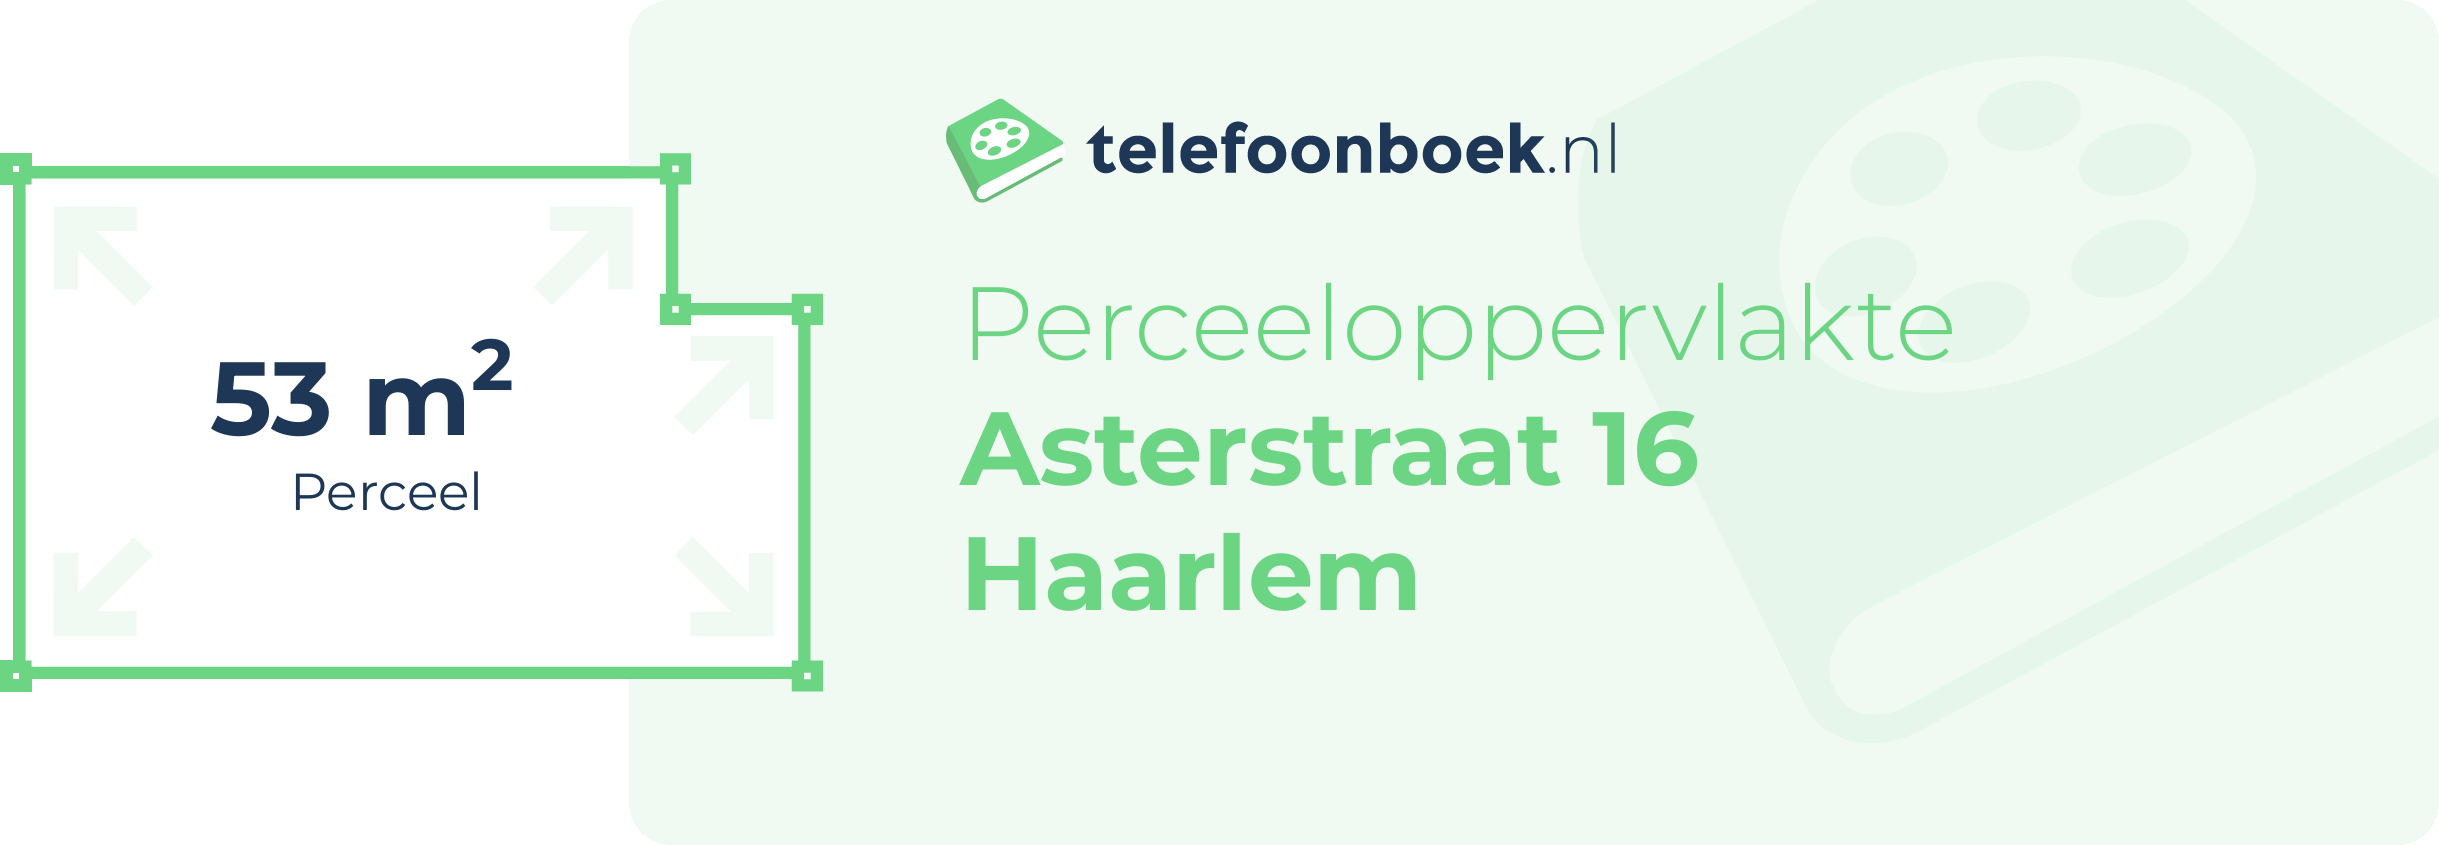 Perceeloppervlakte Asterstraat 16 Haarlem